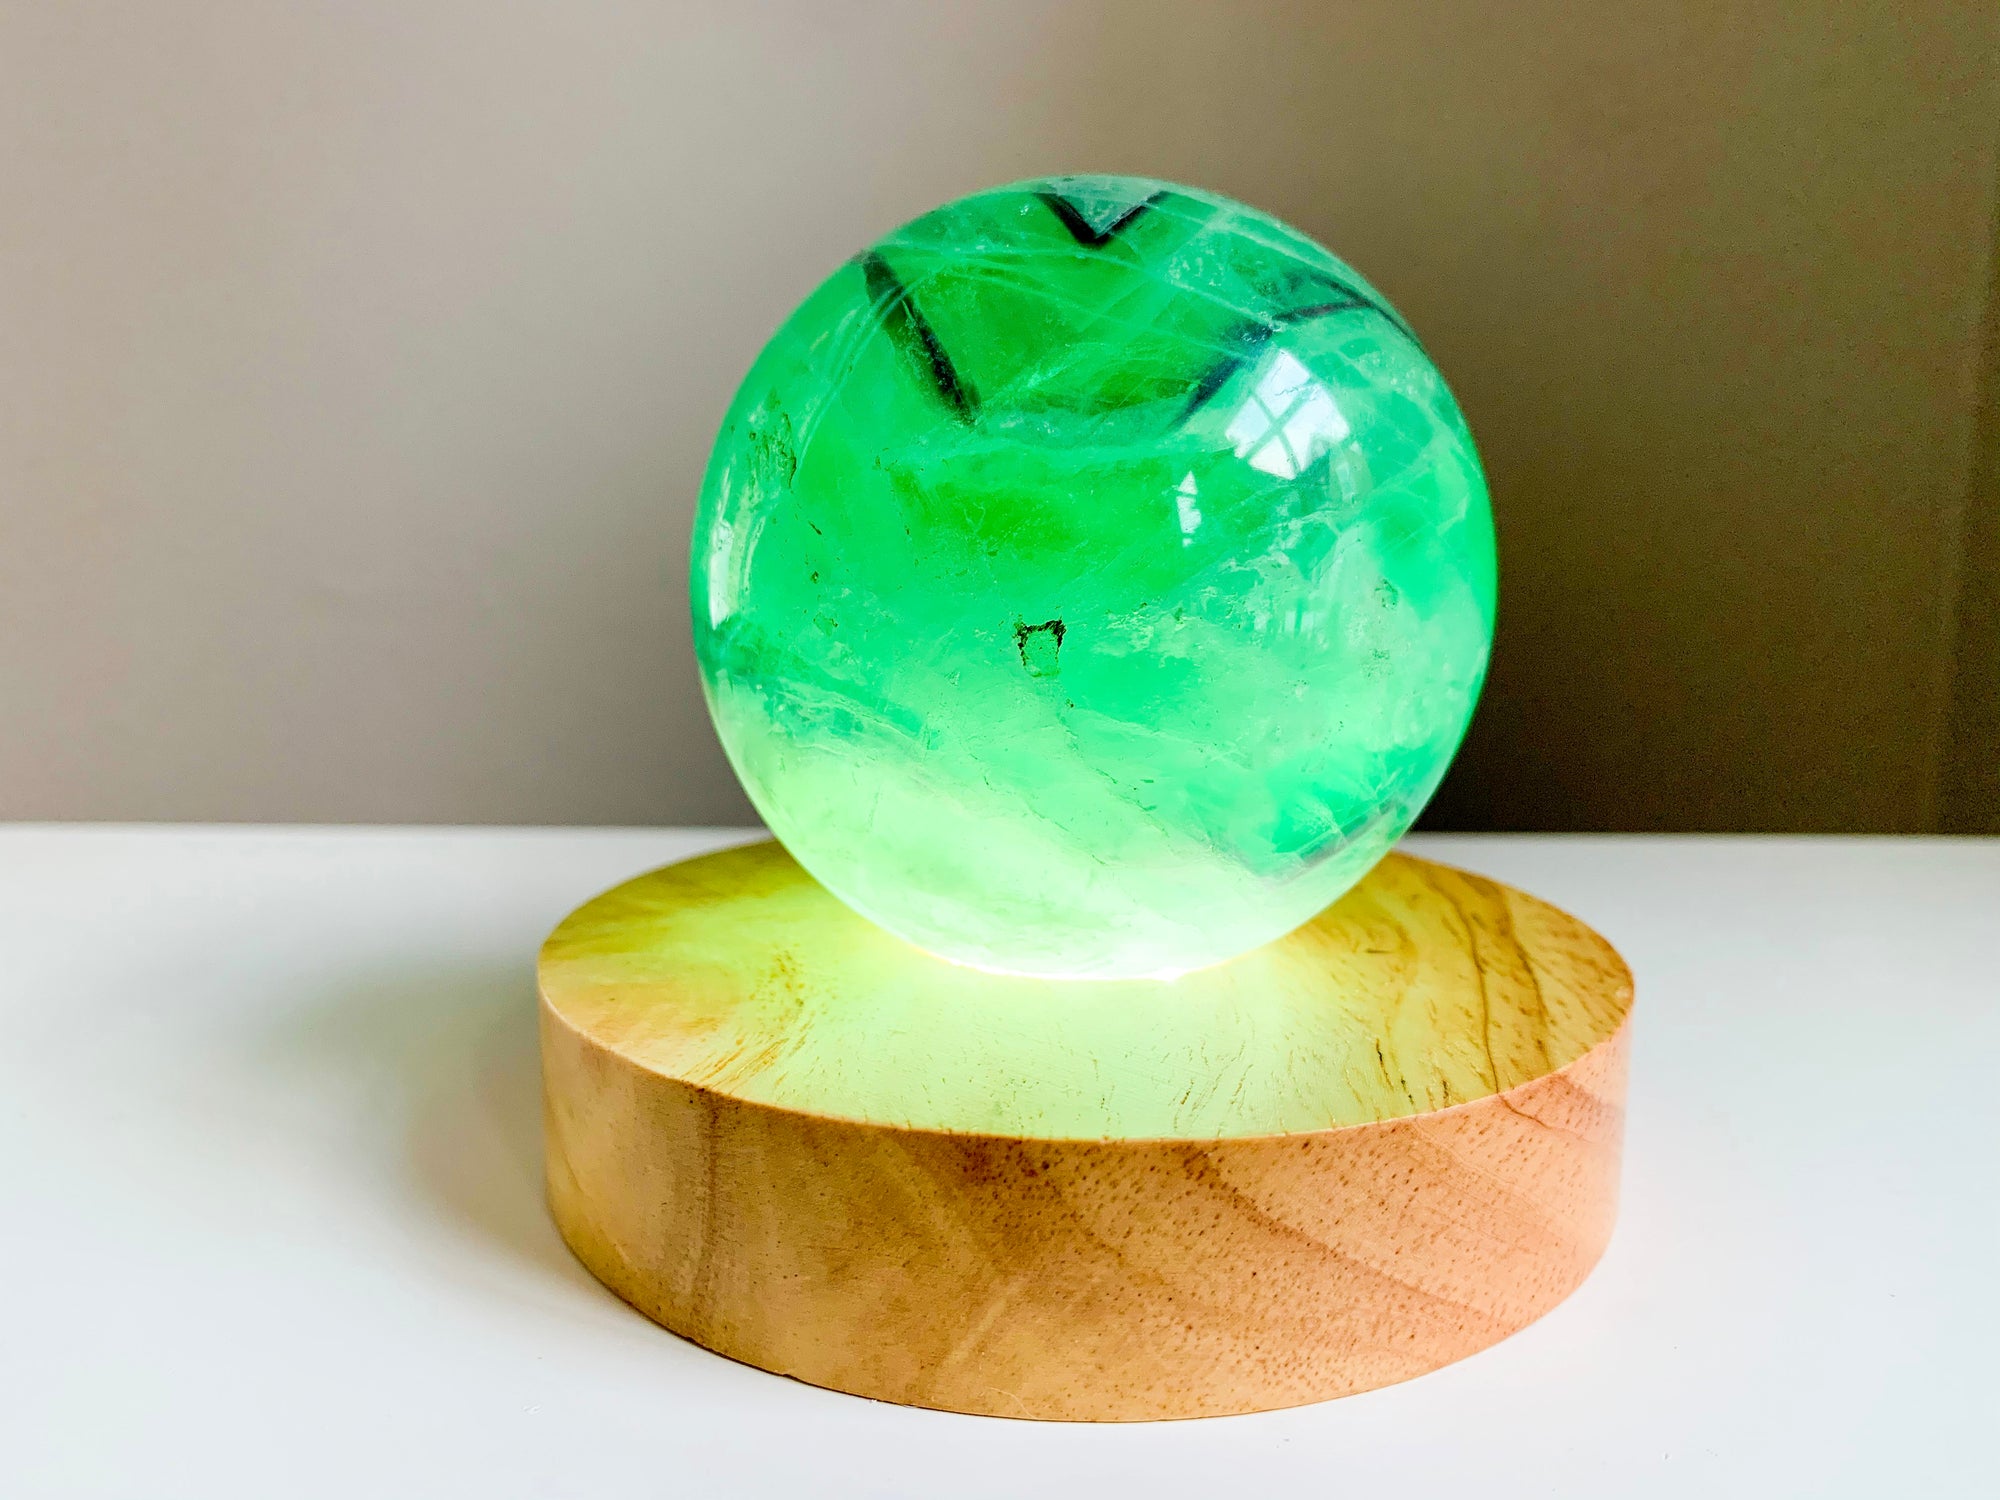 Wooden Crystal & Sphere Holder Light